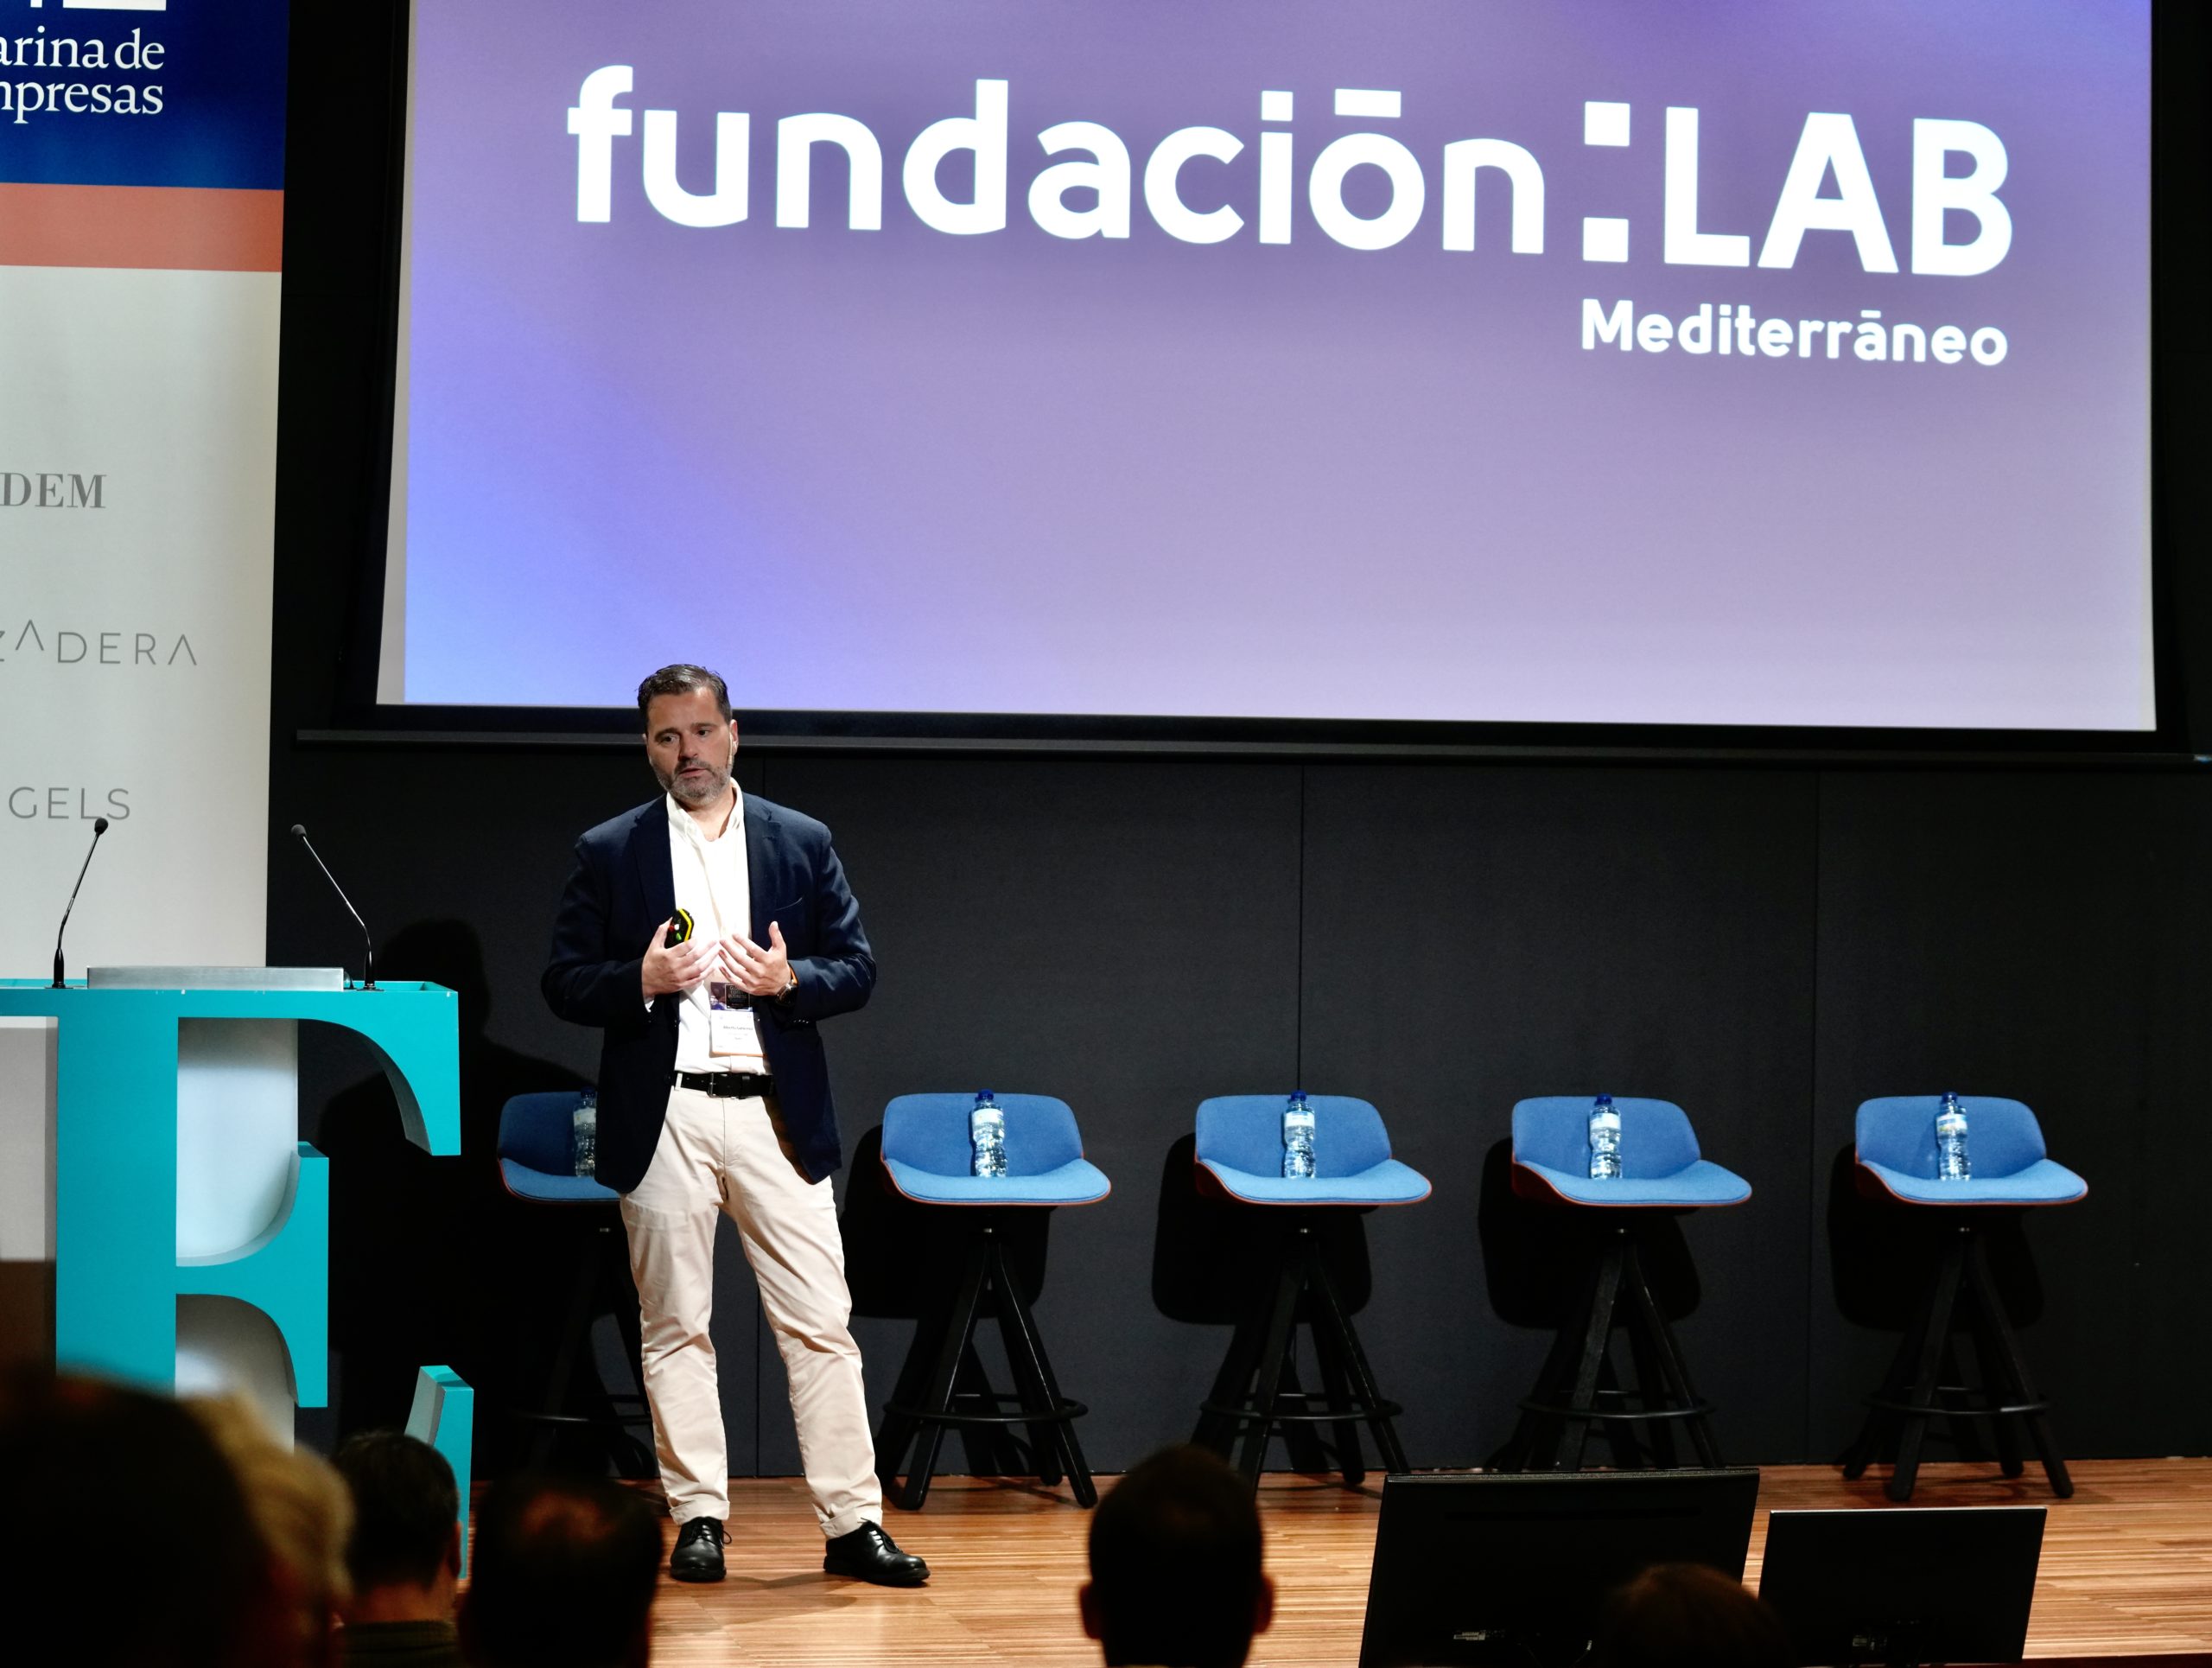 Fundación LAB Mediterráneo ha presentado su misión en el Summit Global de Empresa Familiar